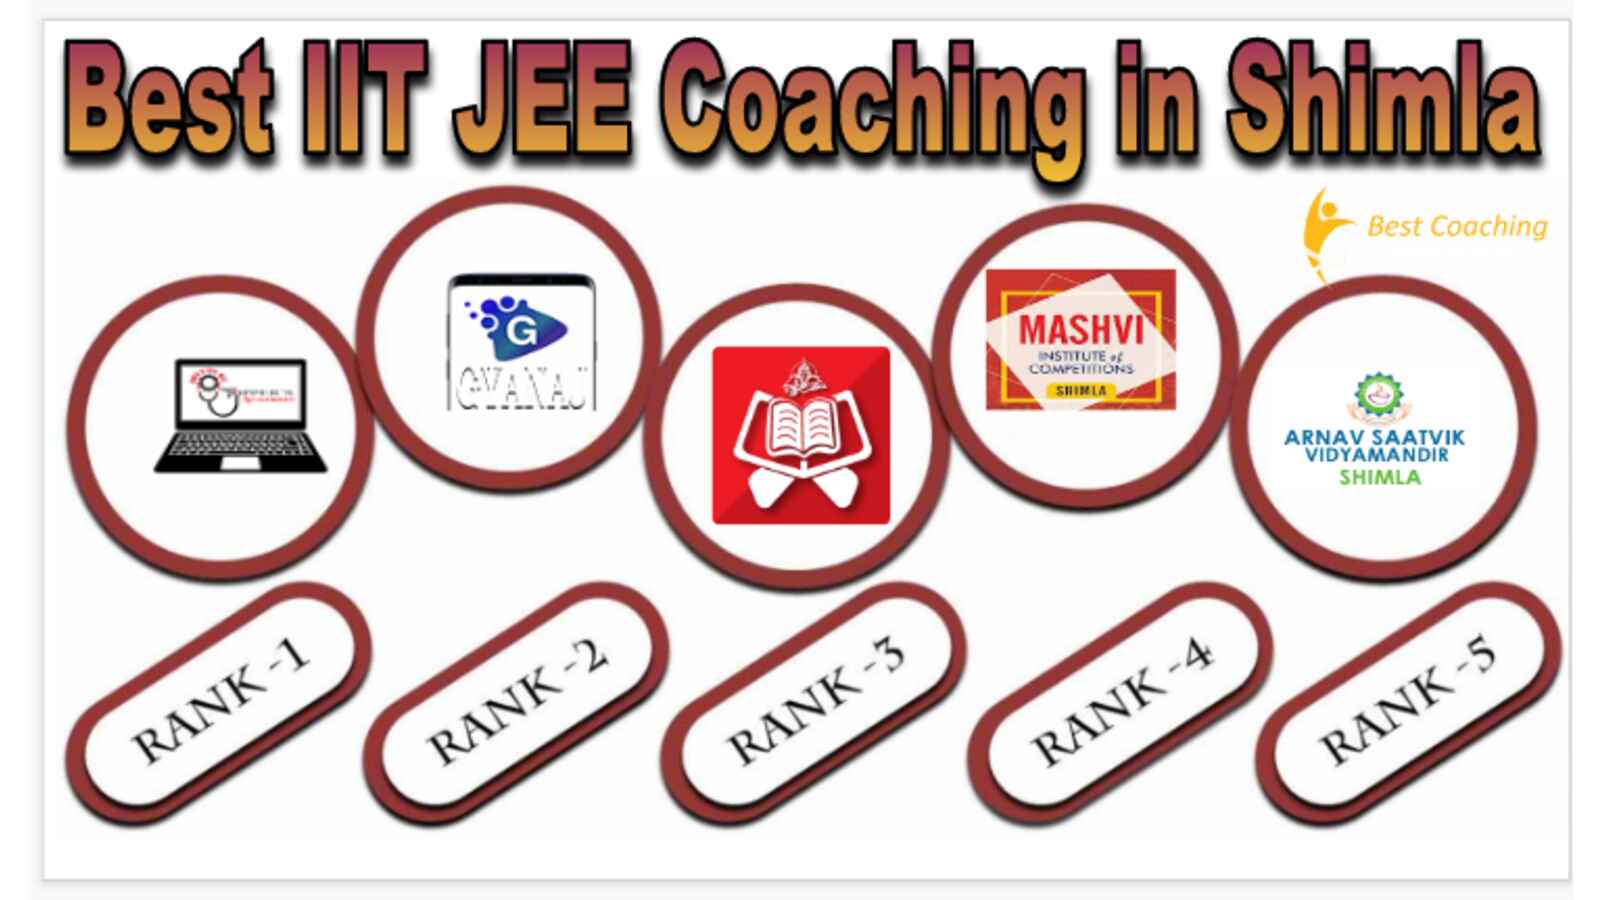 Best IIT JEE Coaching in Shimla